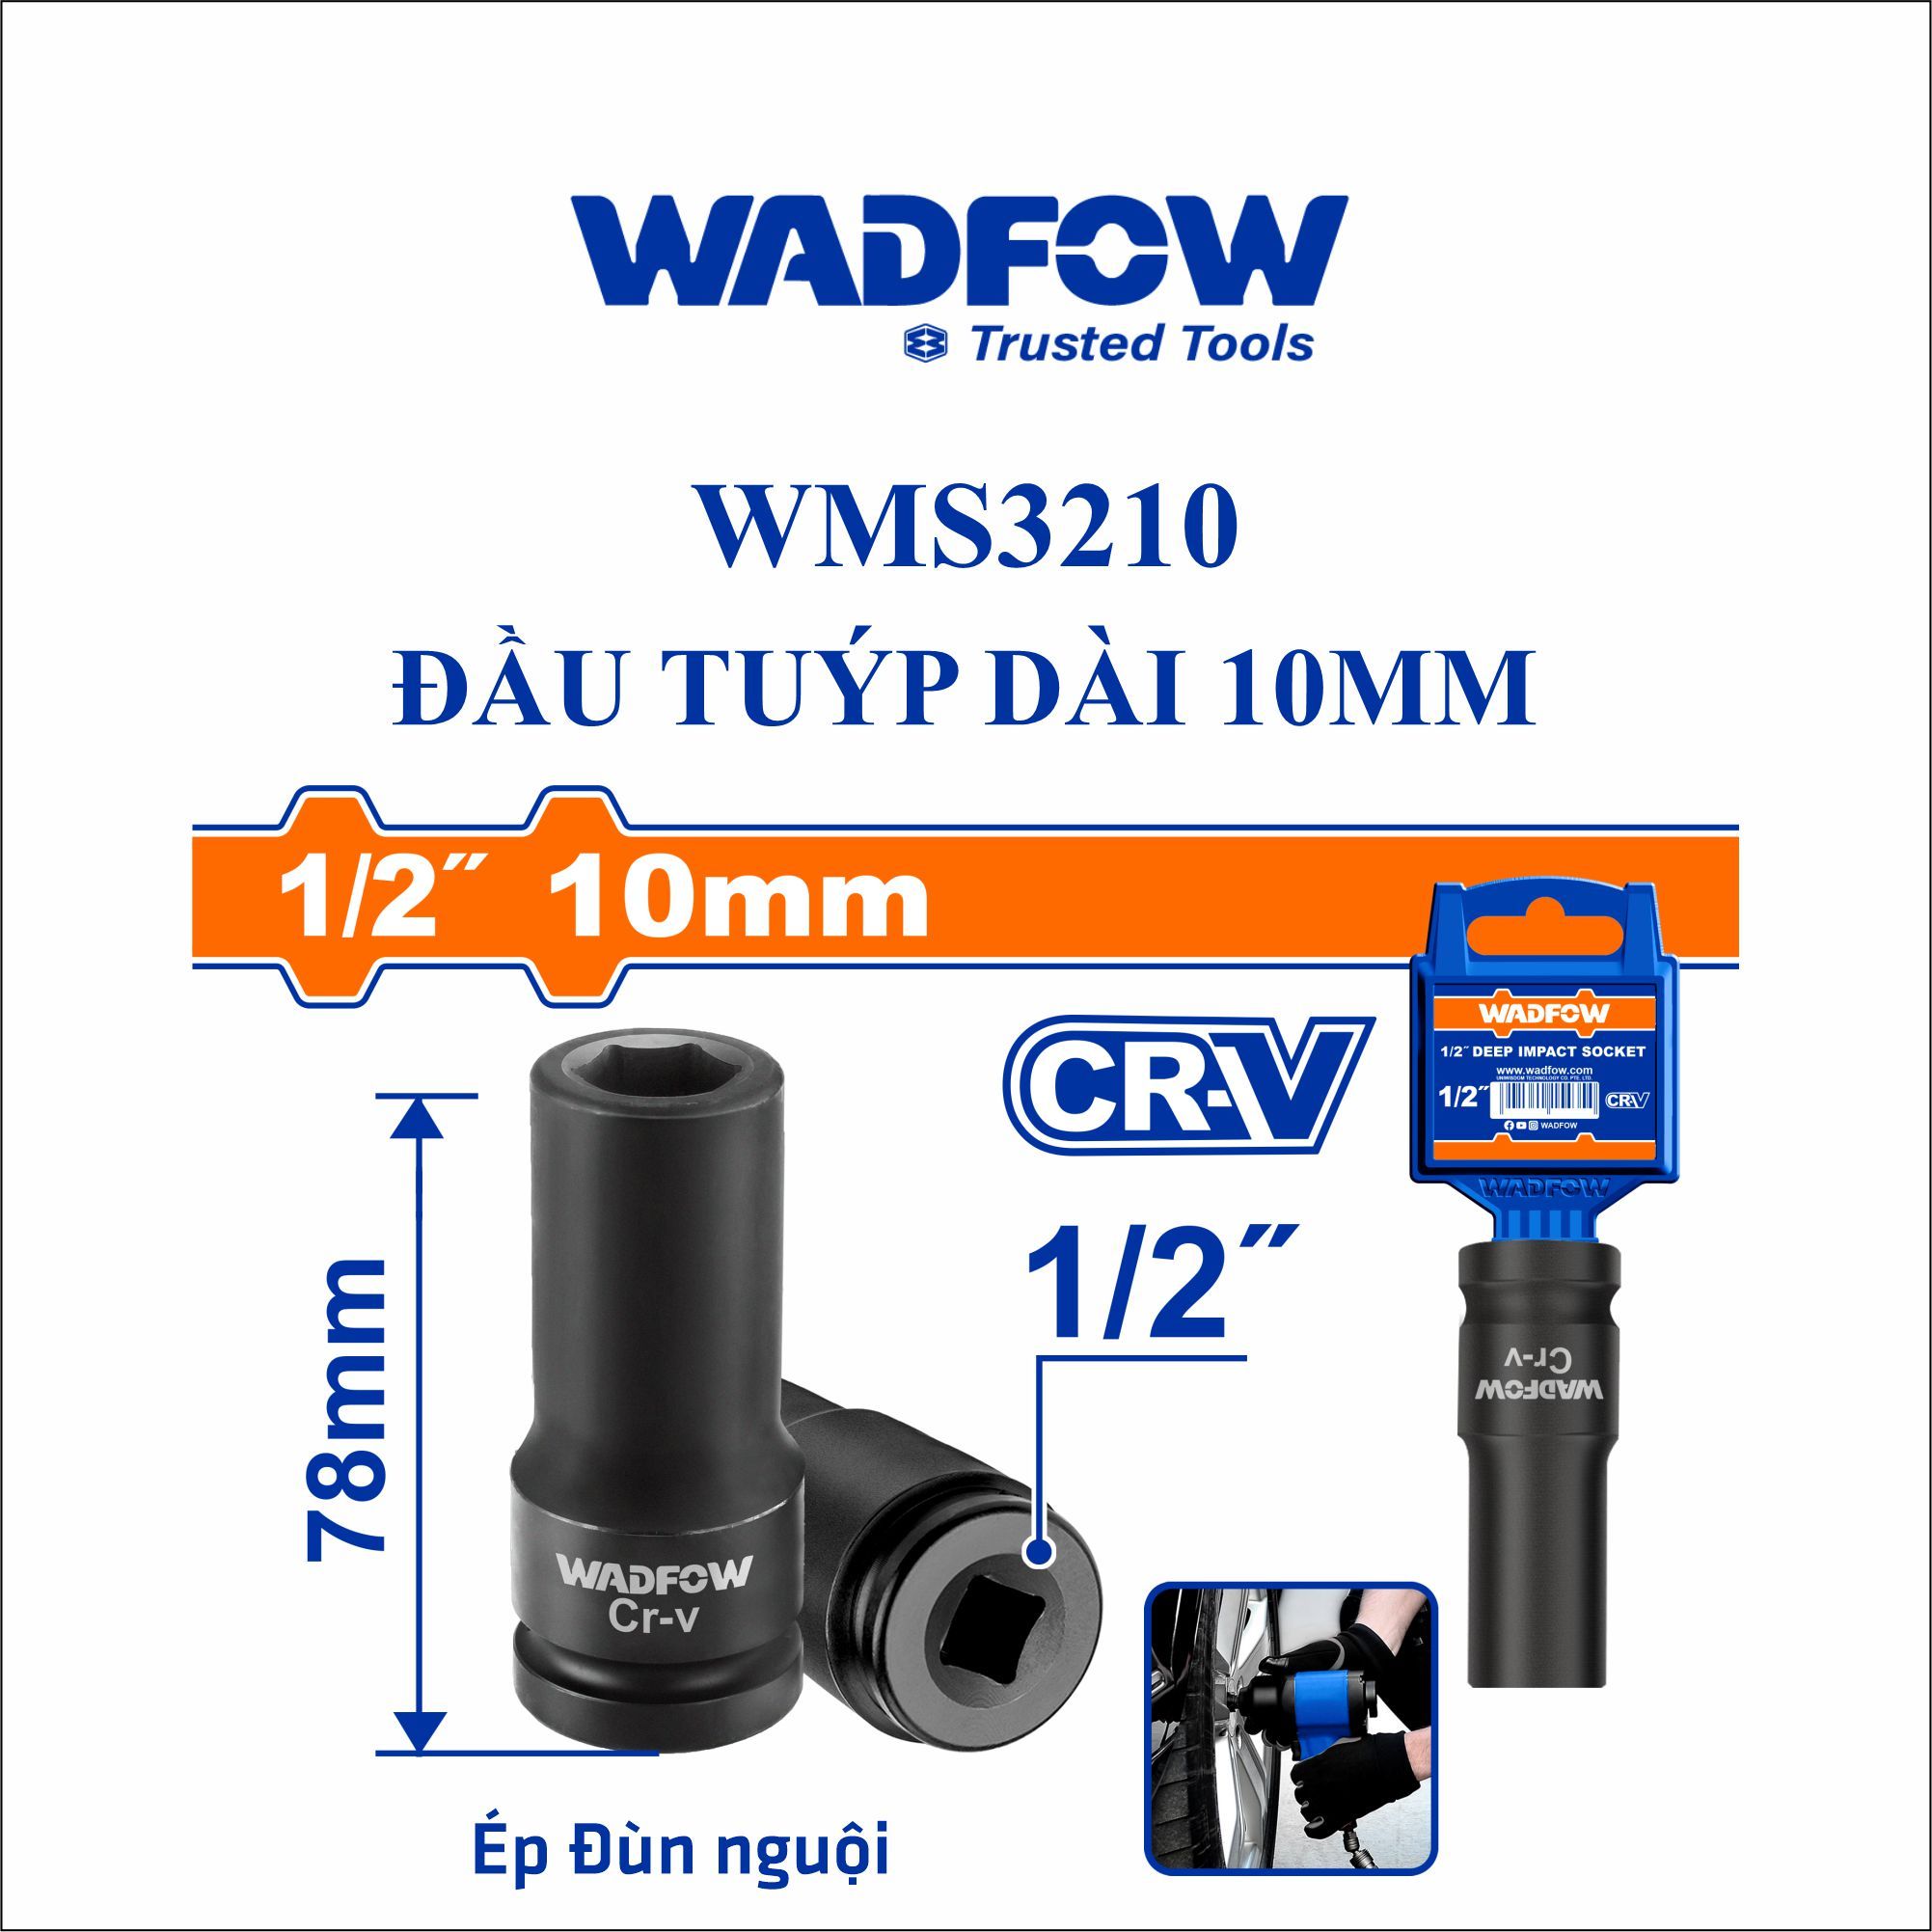  Đầu tuýp dài 10mm WADFOW WMS3210 